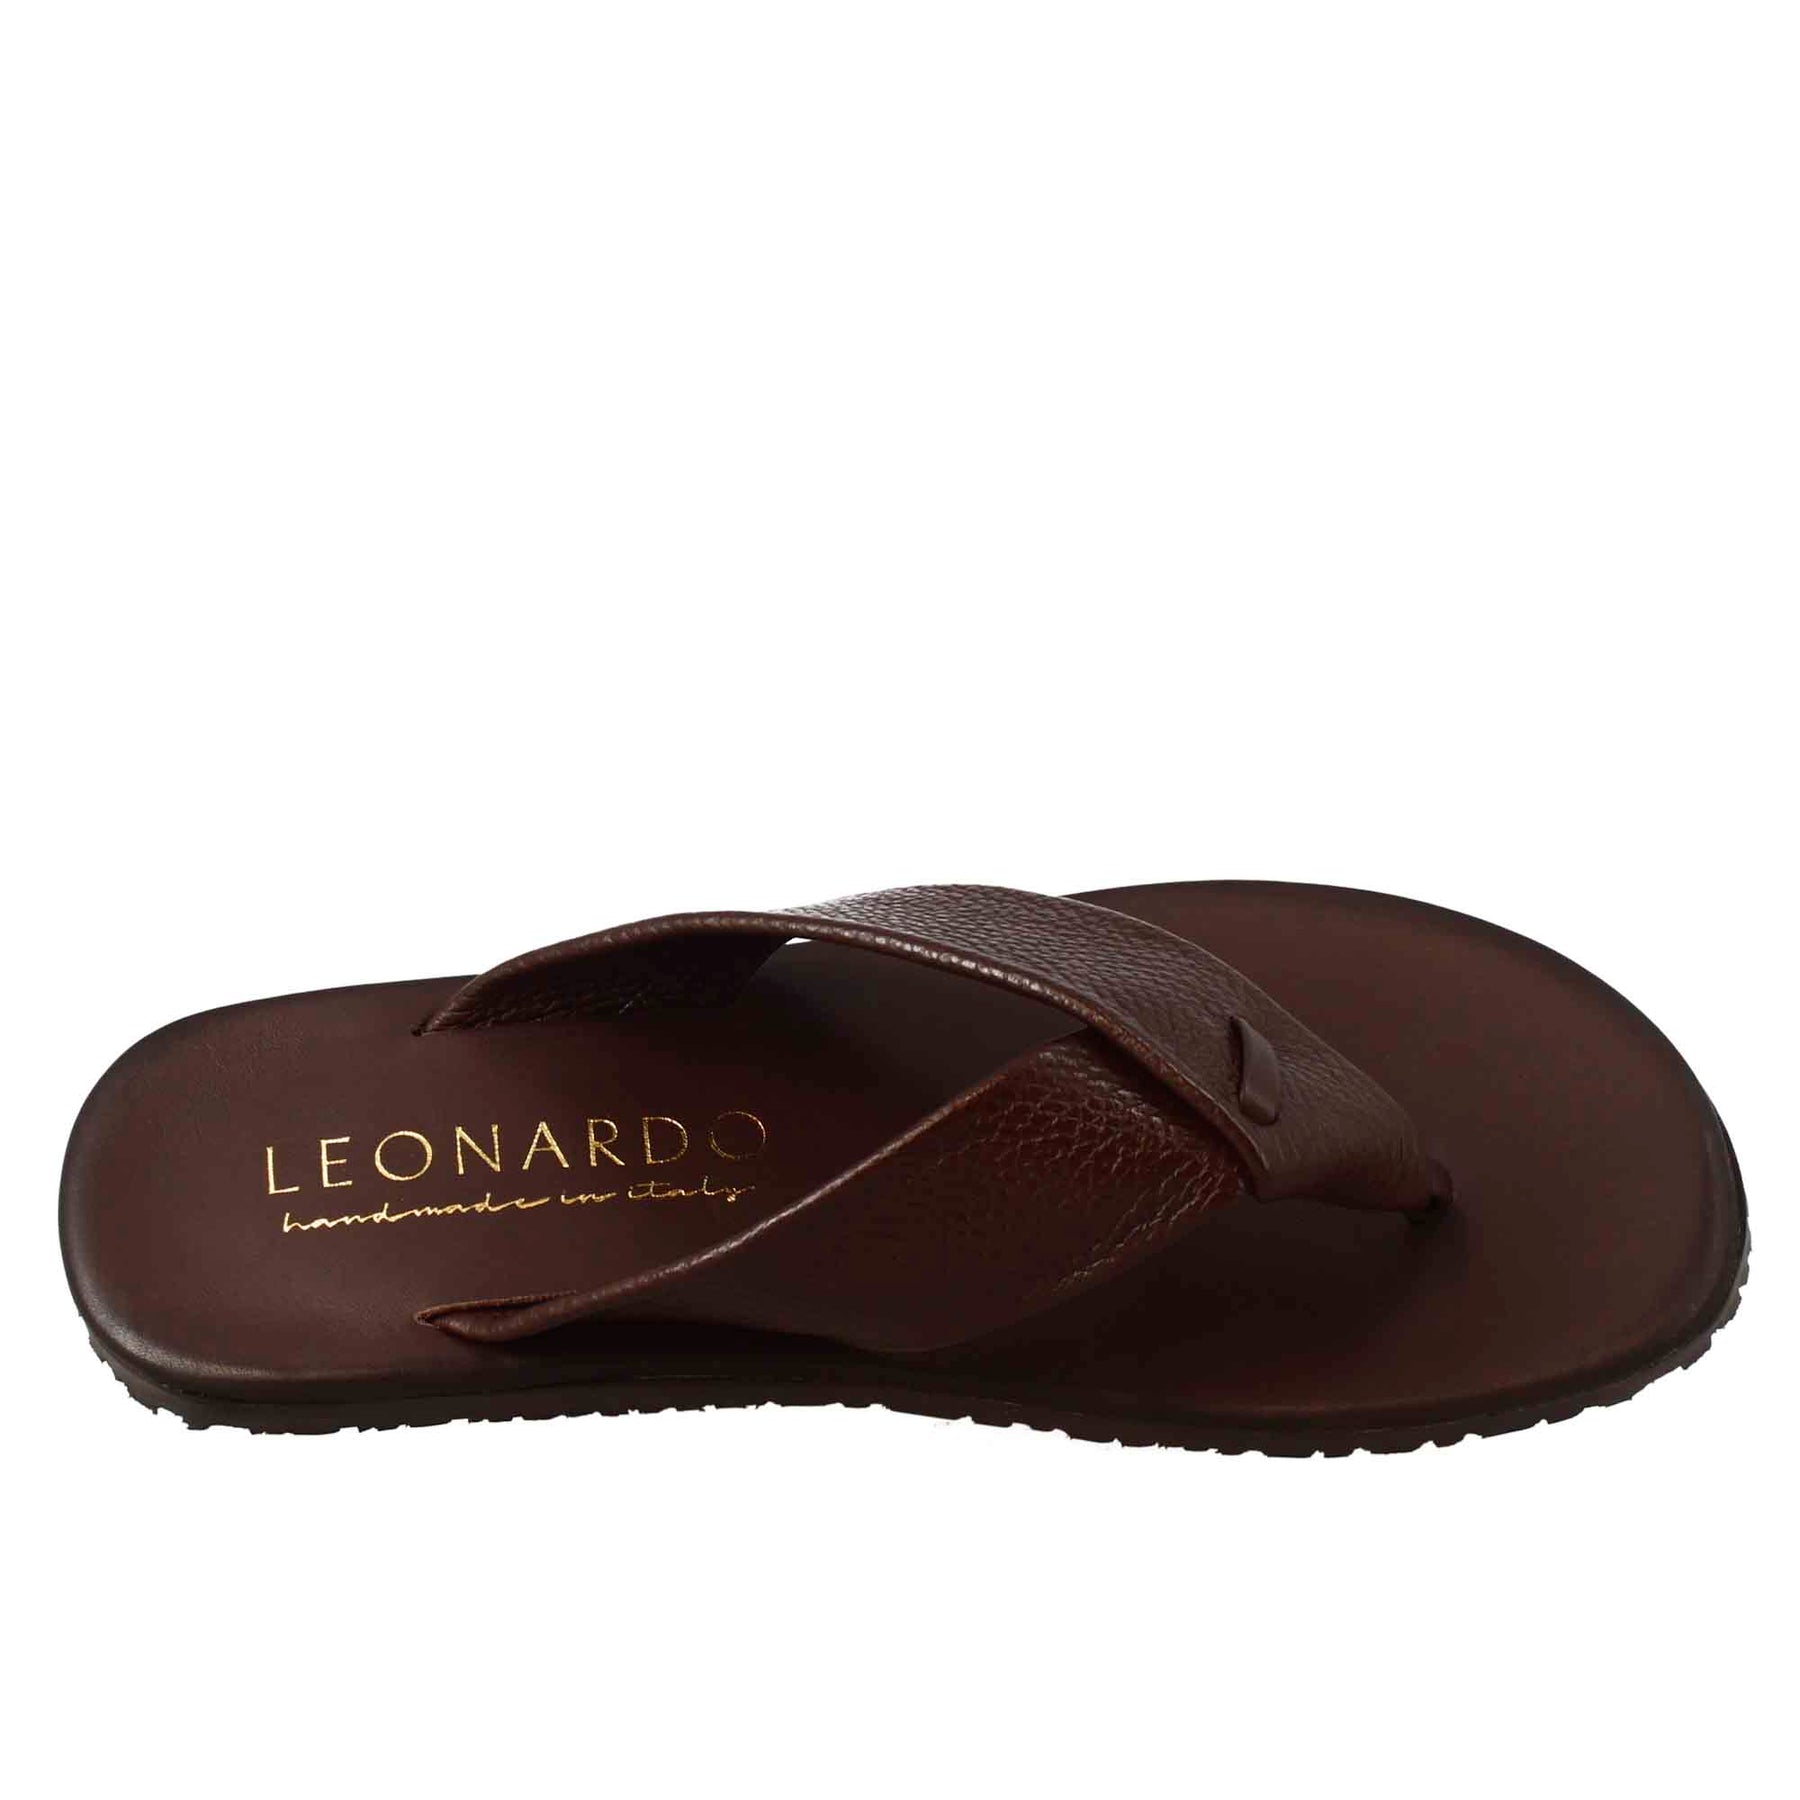 Sandali ciabatta infradito da uomo fatti a mano in pelle marrone - LeonardoShoes